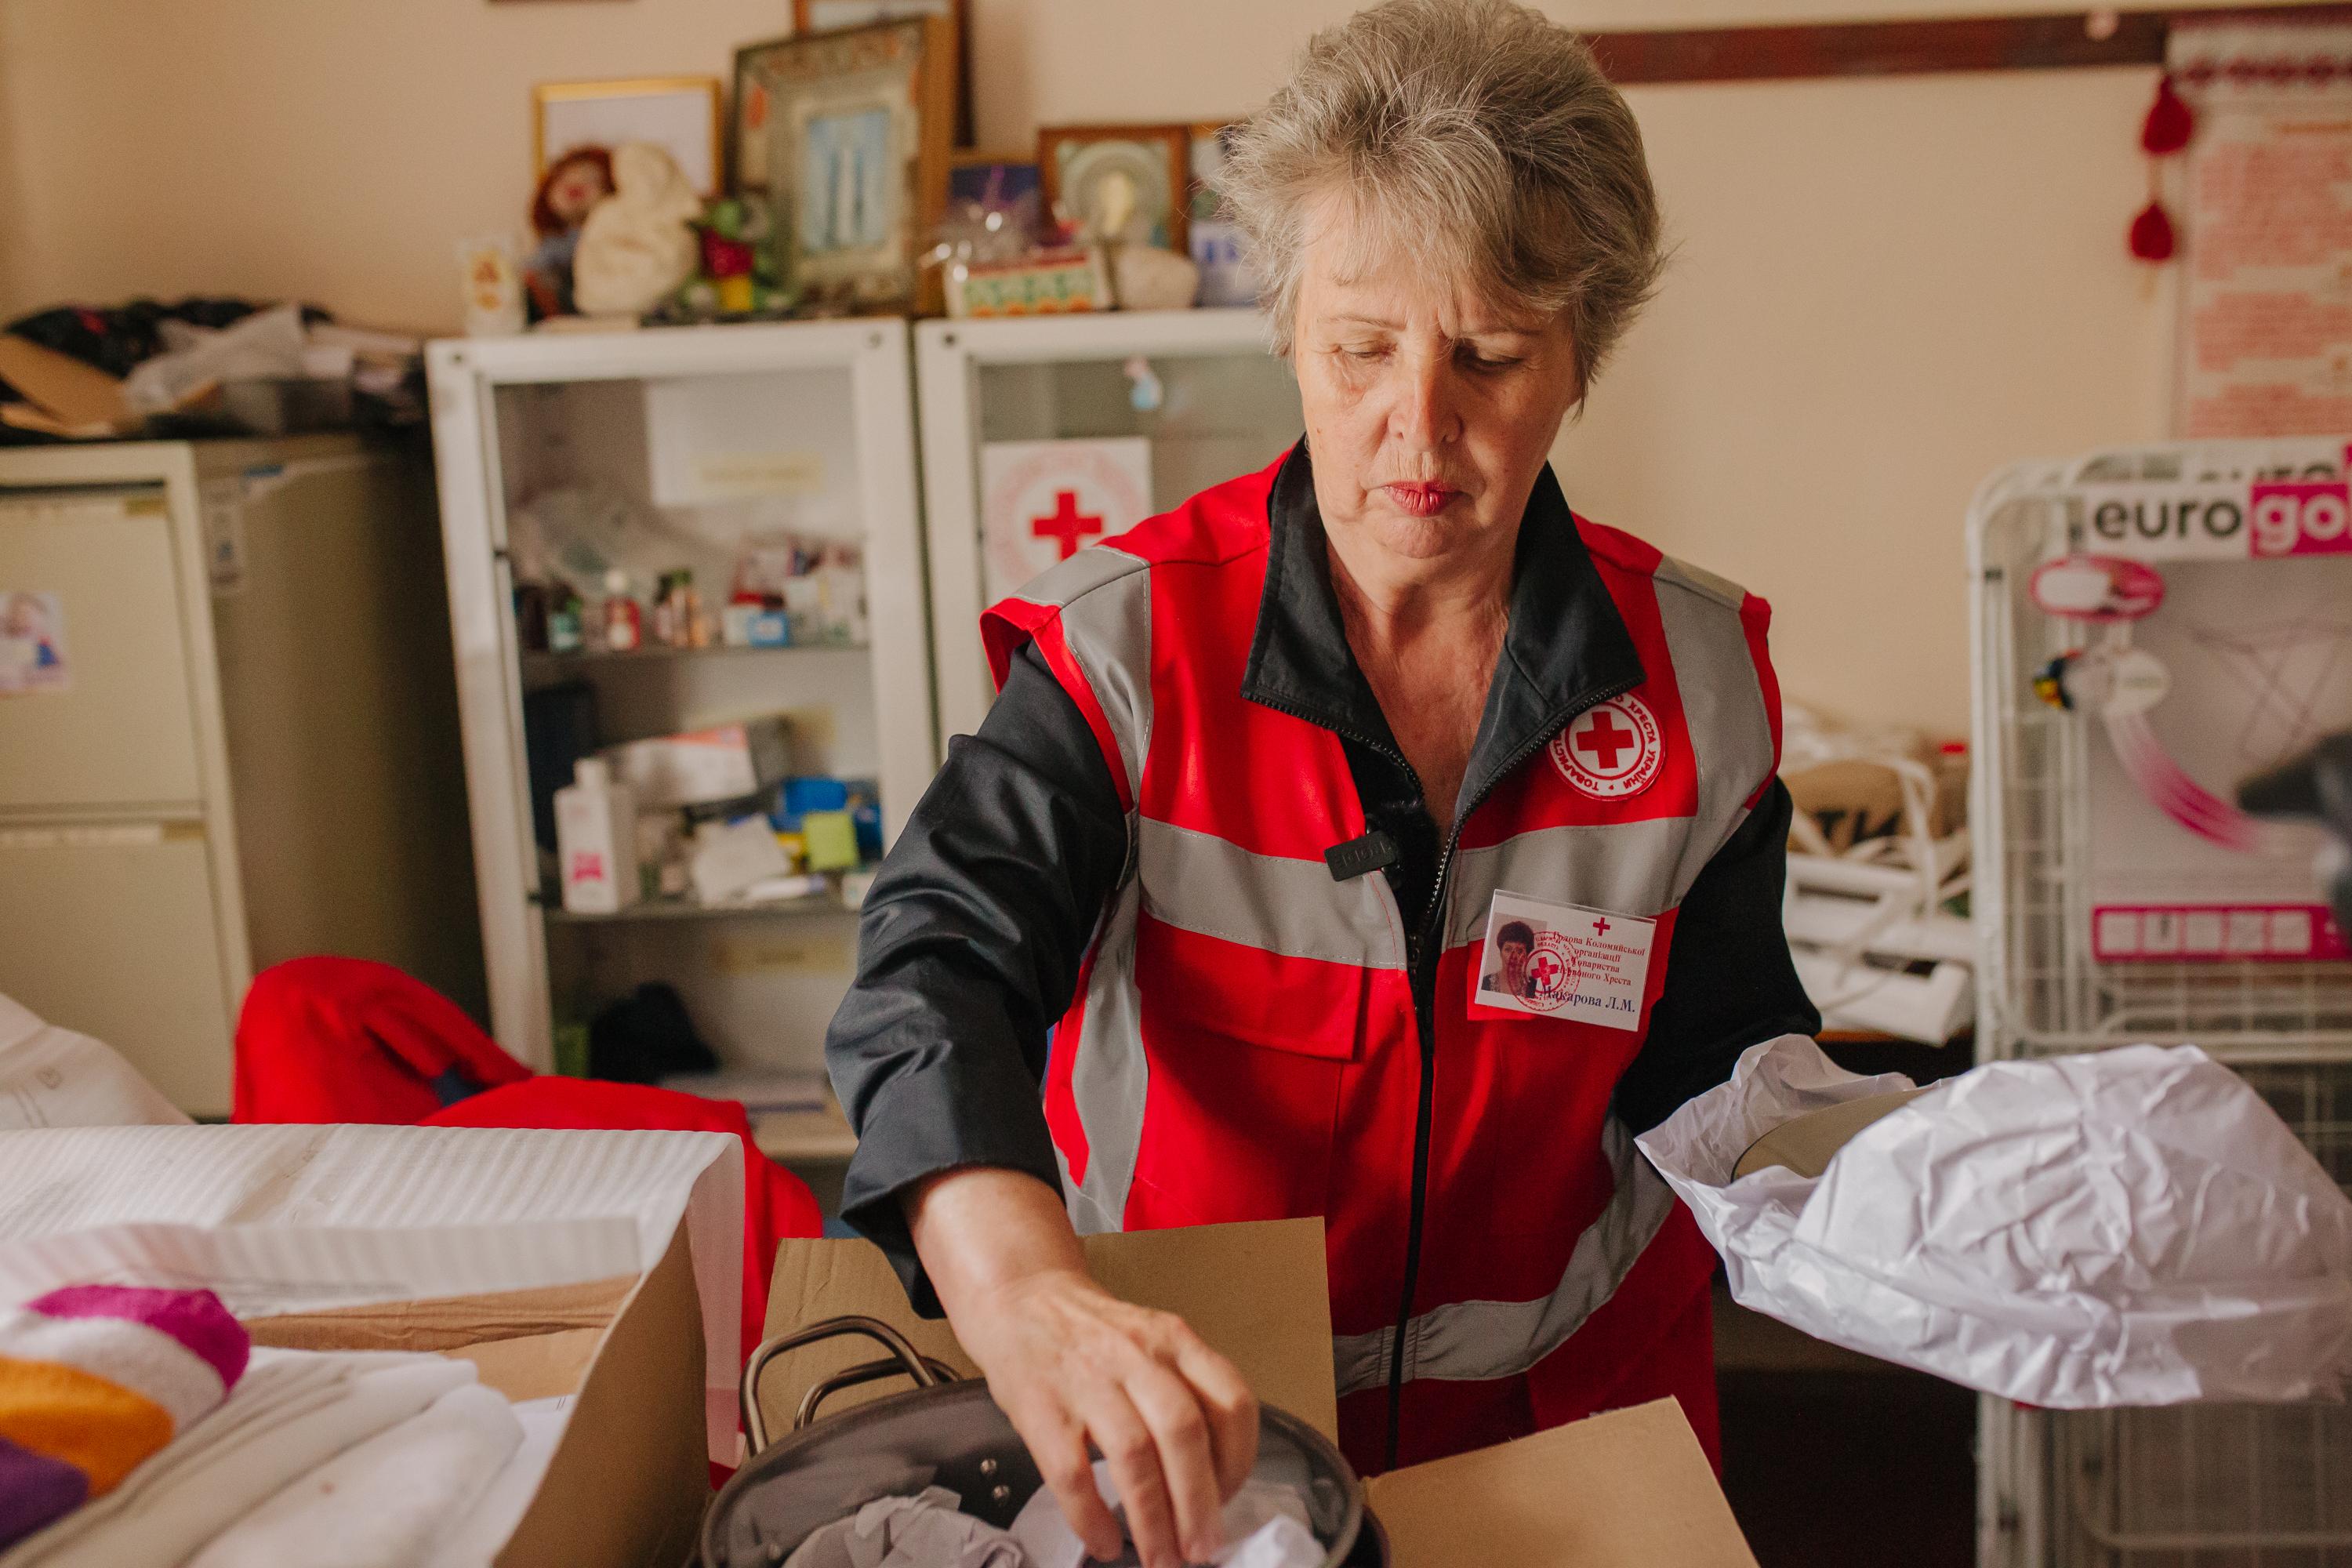 Un membro del personale della Croce Rossa ucraina davanti a un armadietto dei medicinali. Sembra che stia preparando una borsa con il materiale necessario.